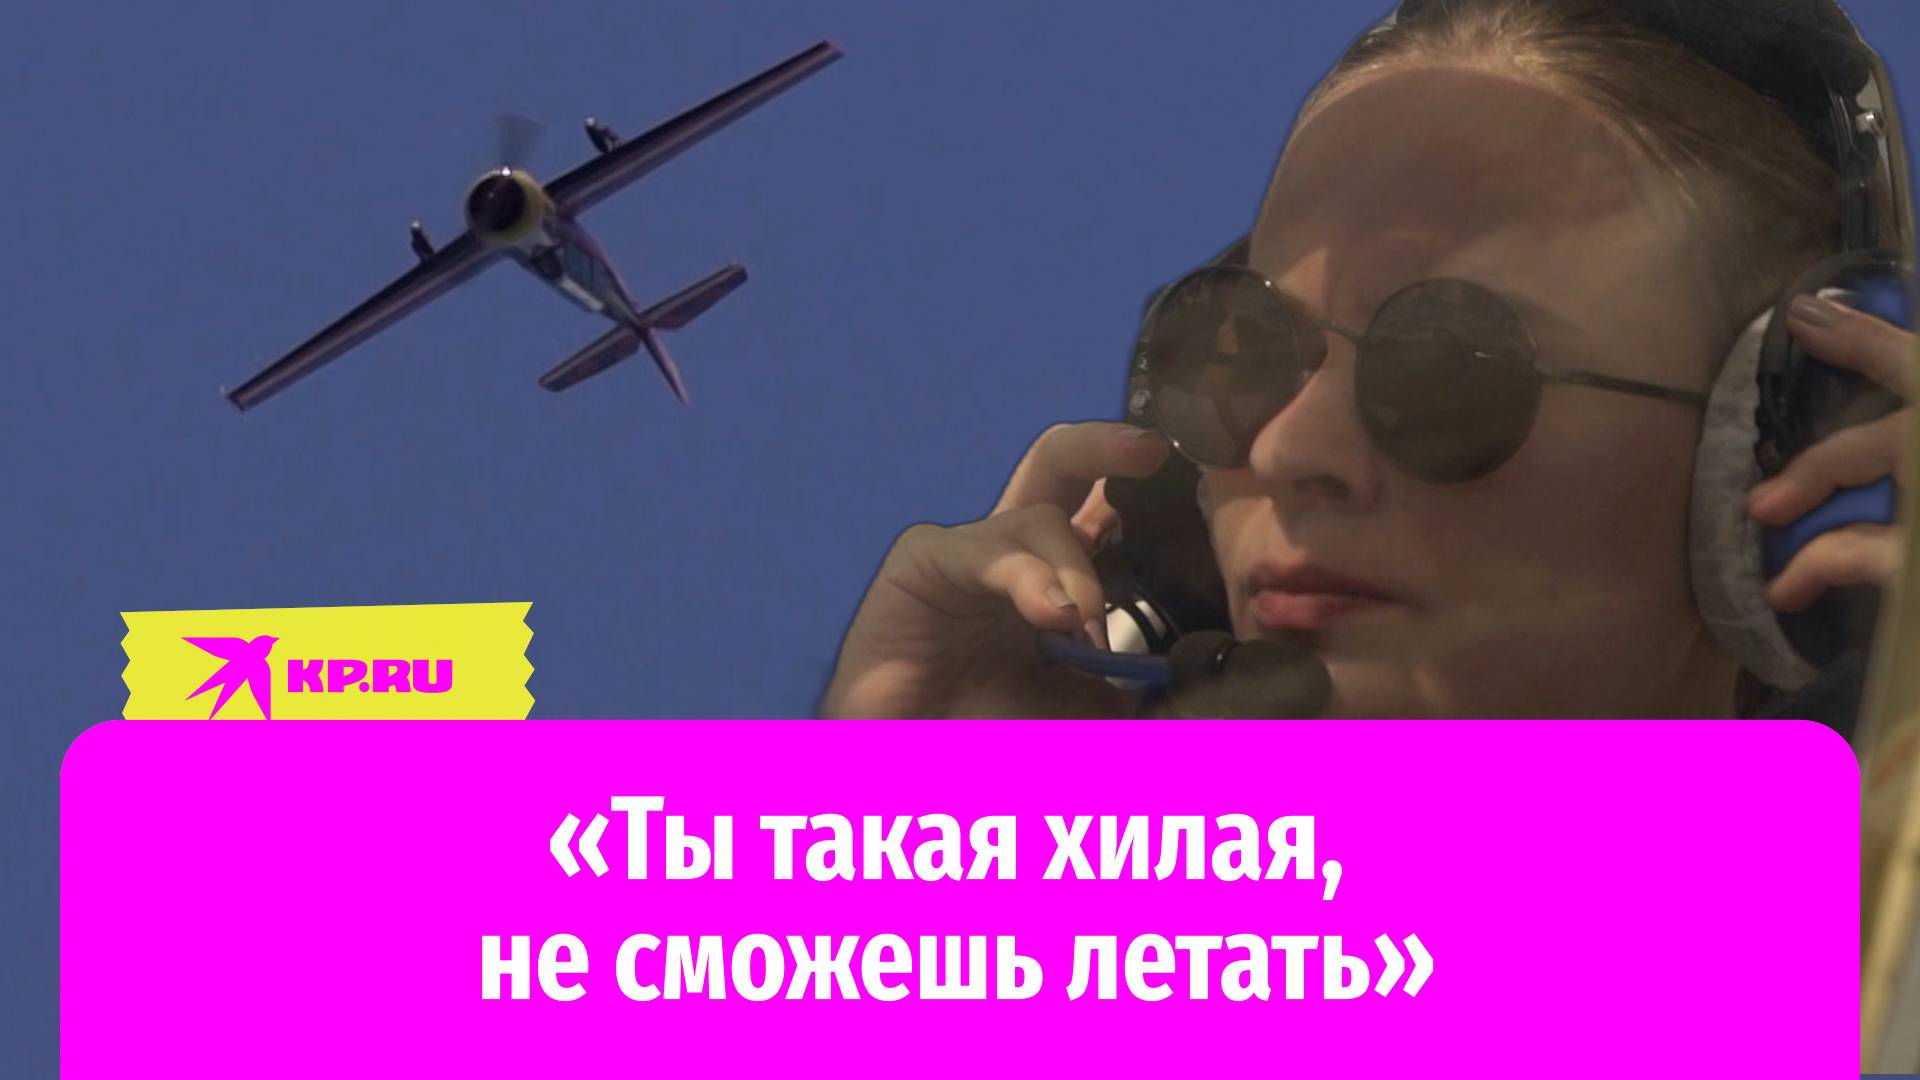 От планера к Як-52: как 20-летняя девушка стала профессиональным пилотом самолётов